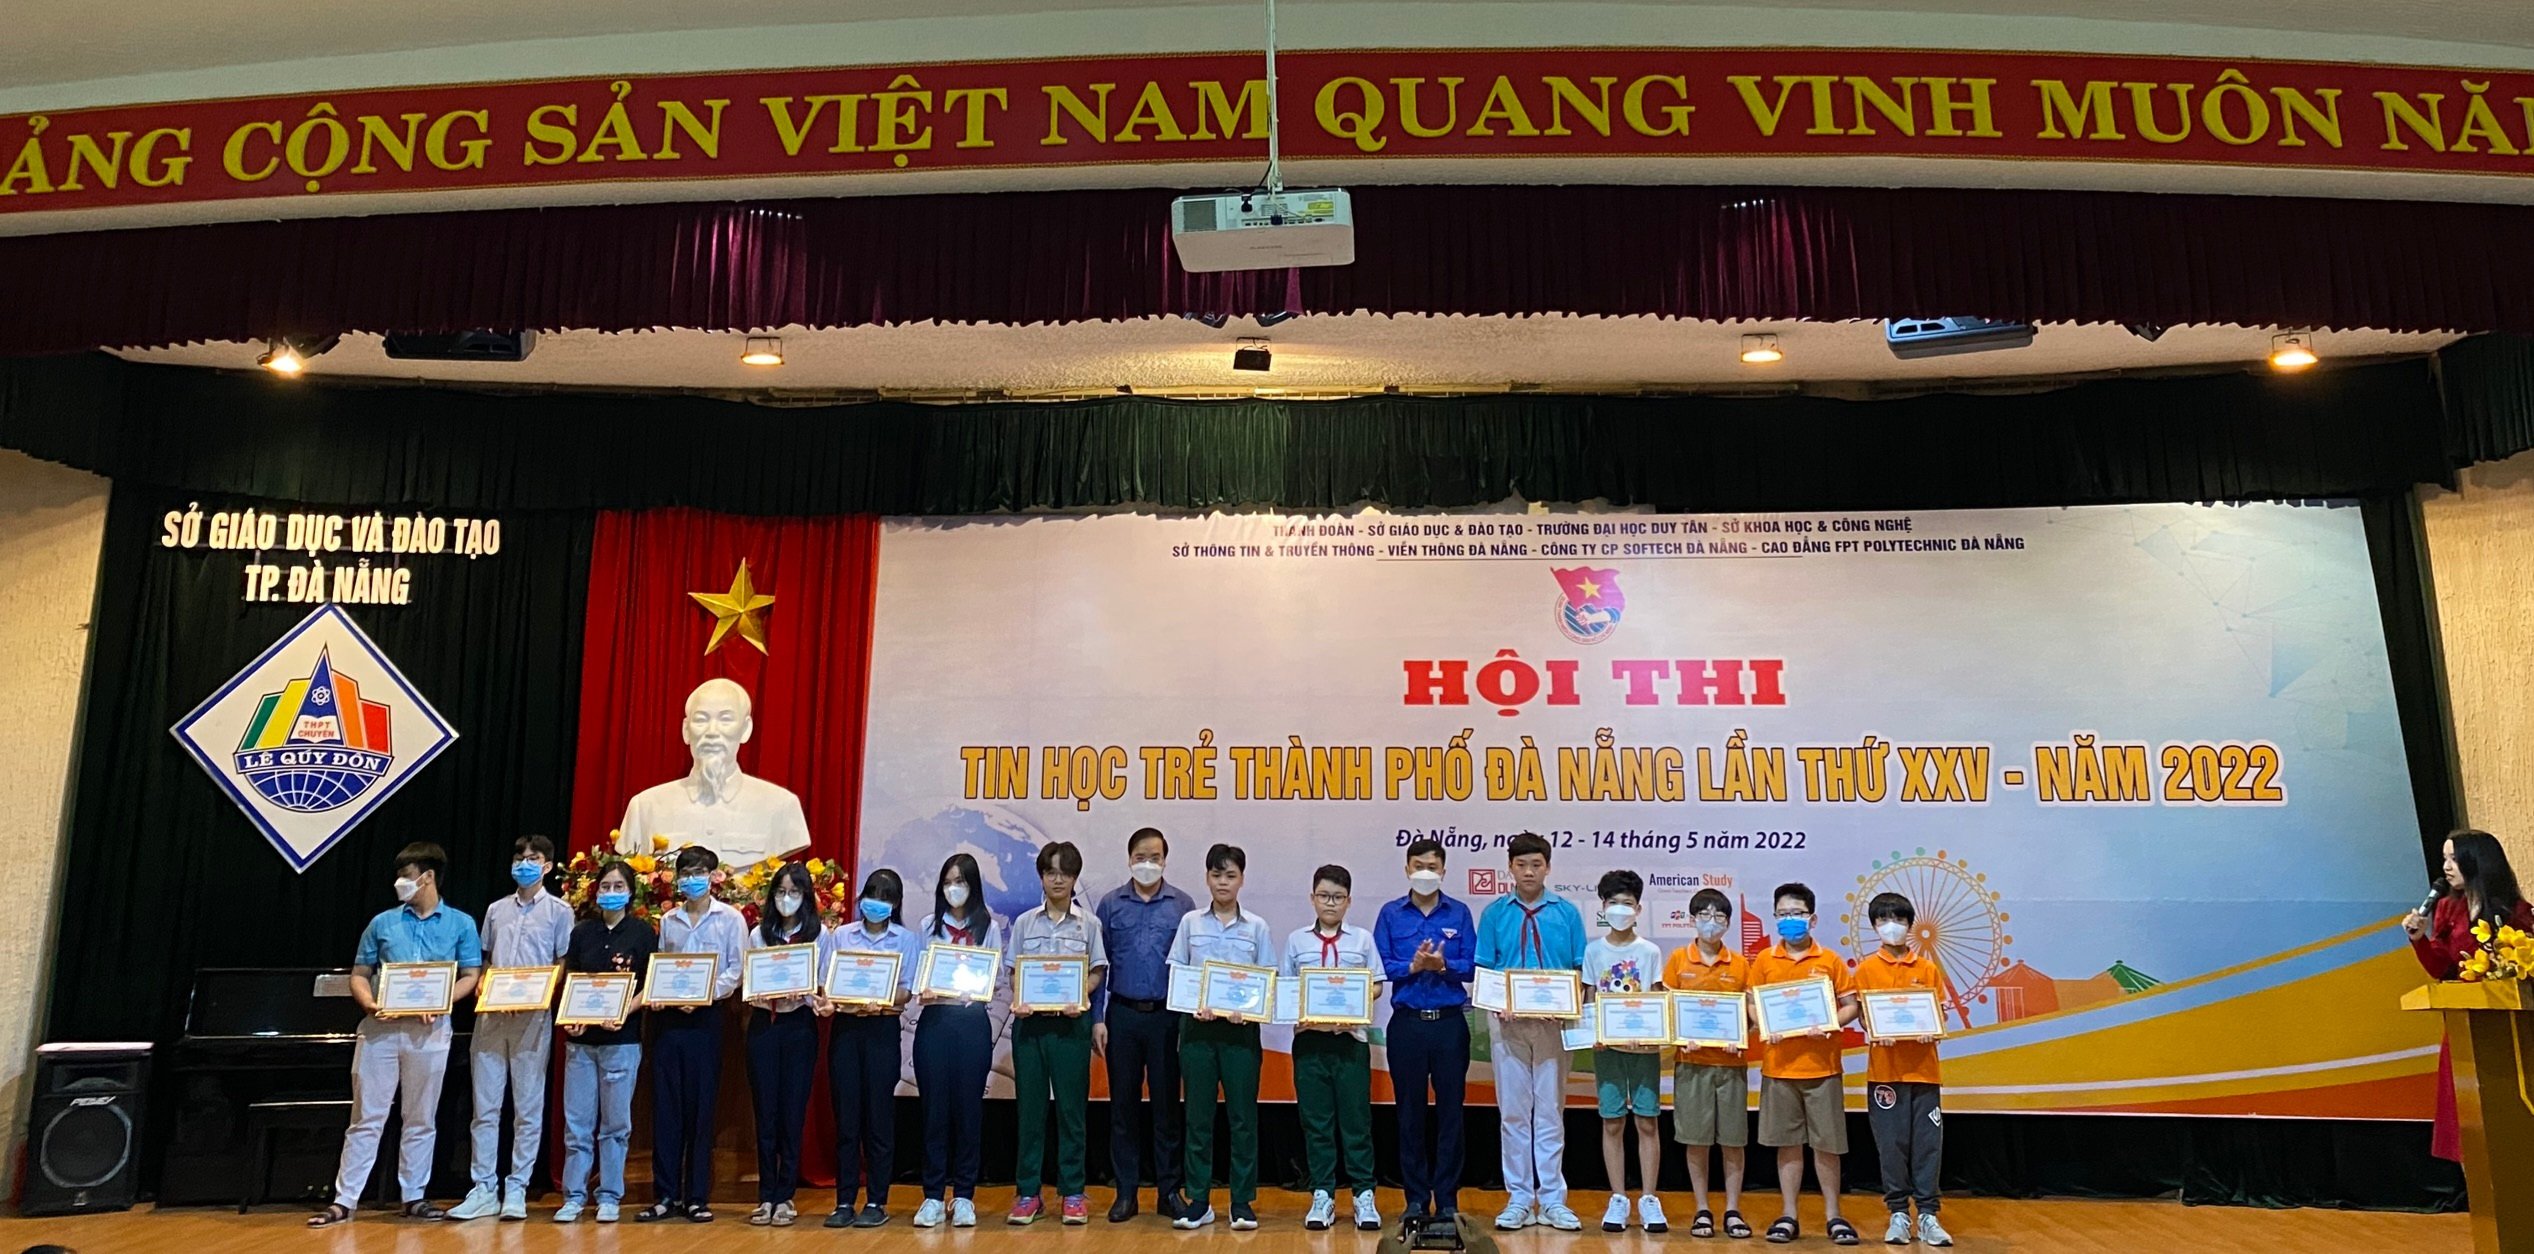 97 thí sinh đạt giải Nhất tại Hội thi Tin học trẻ thành phố Đà Nẵng lần thứ XXV, năm 2022